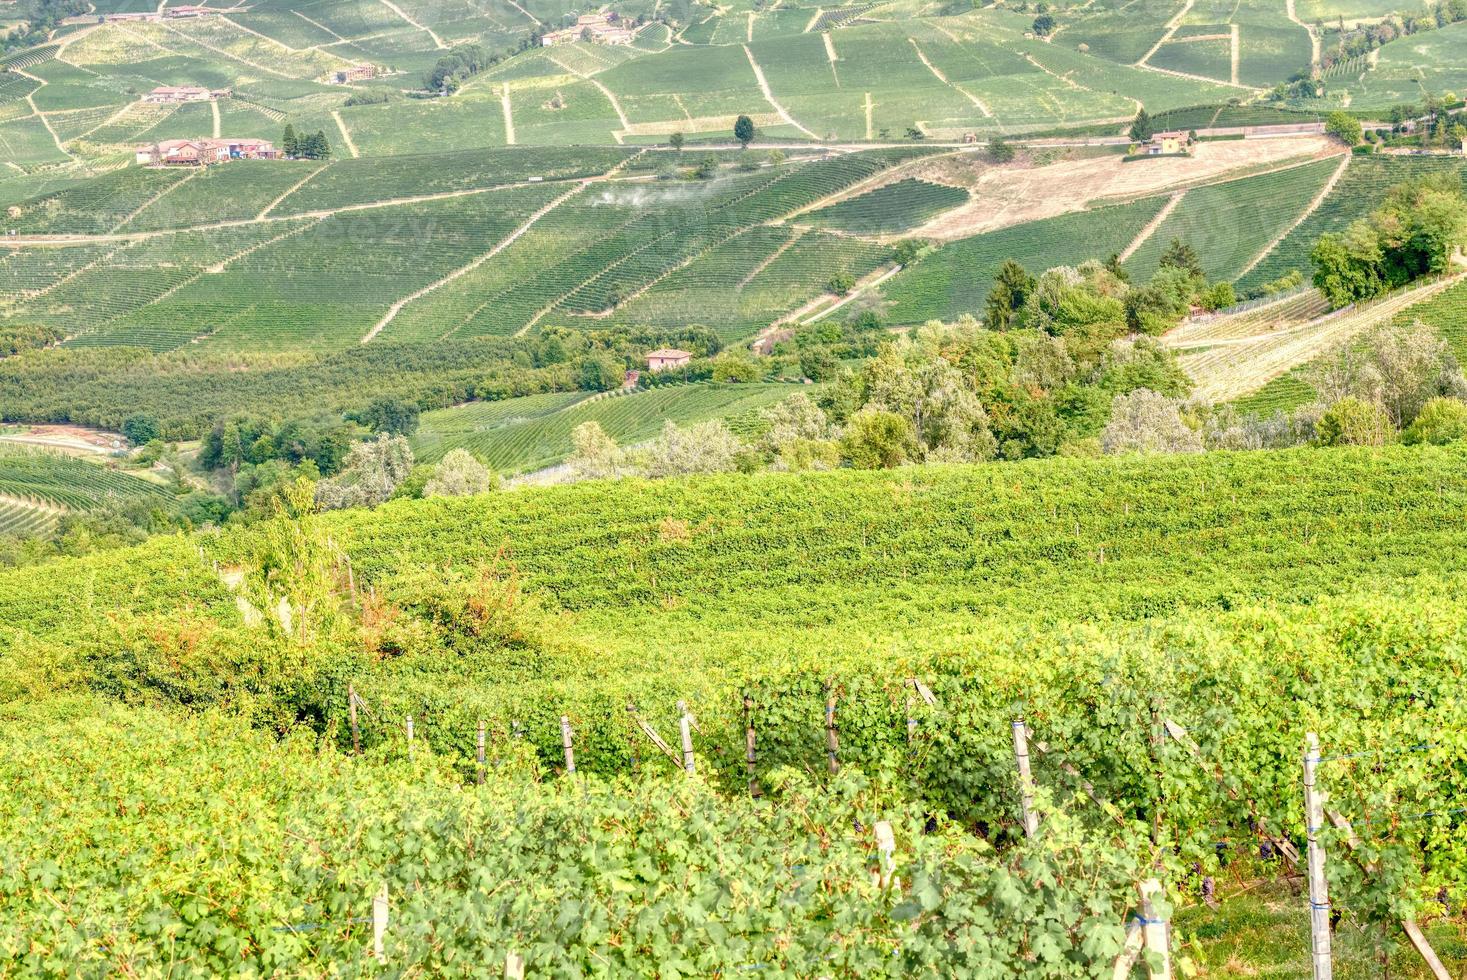 wijngaarden in het heuvelachtige gebied van langhe, Noord-Italië, UNESCO-site. foto